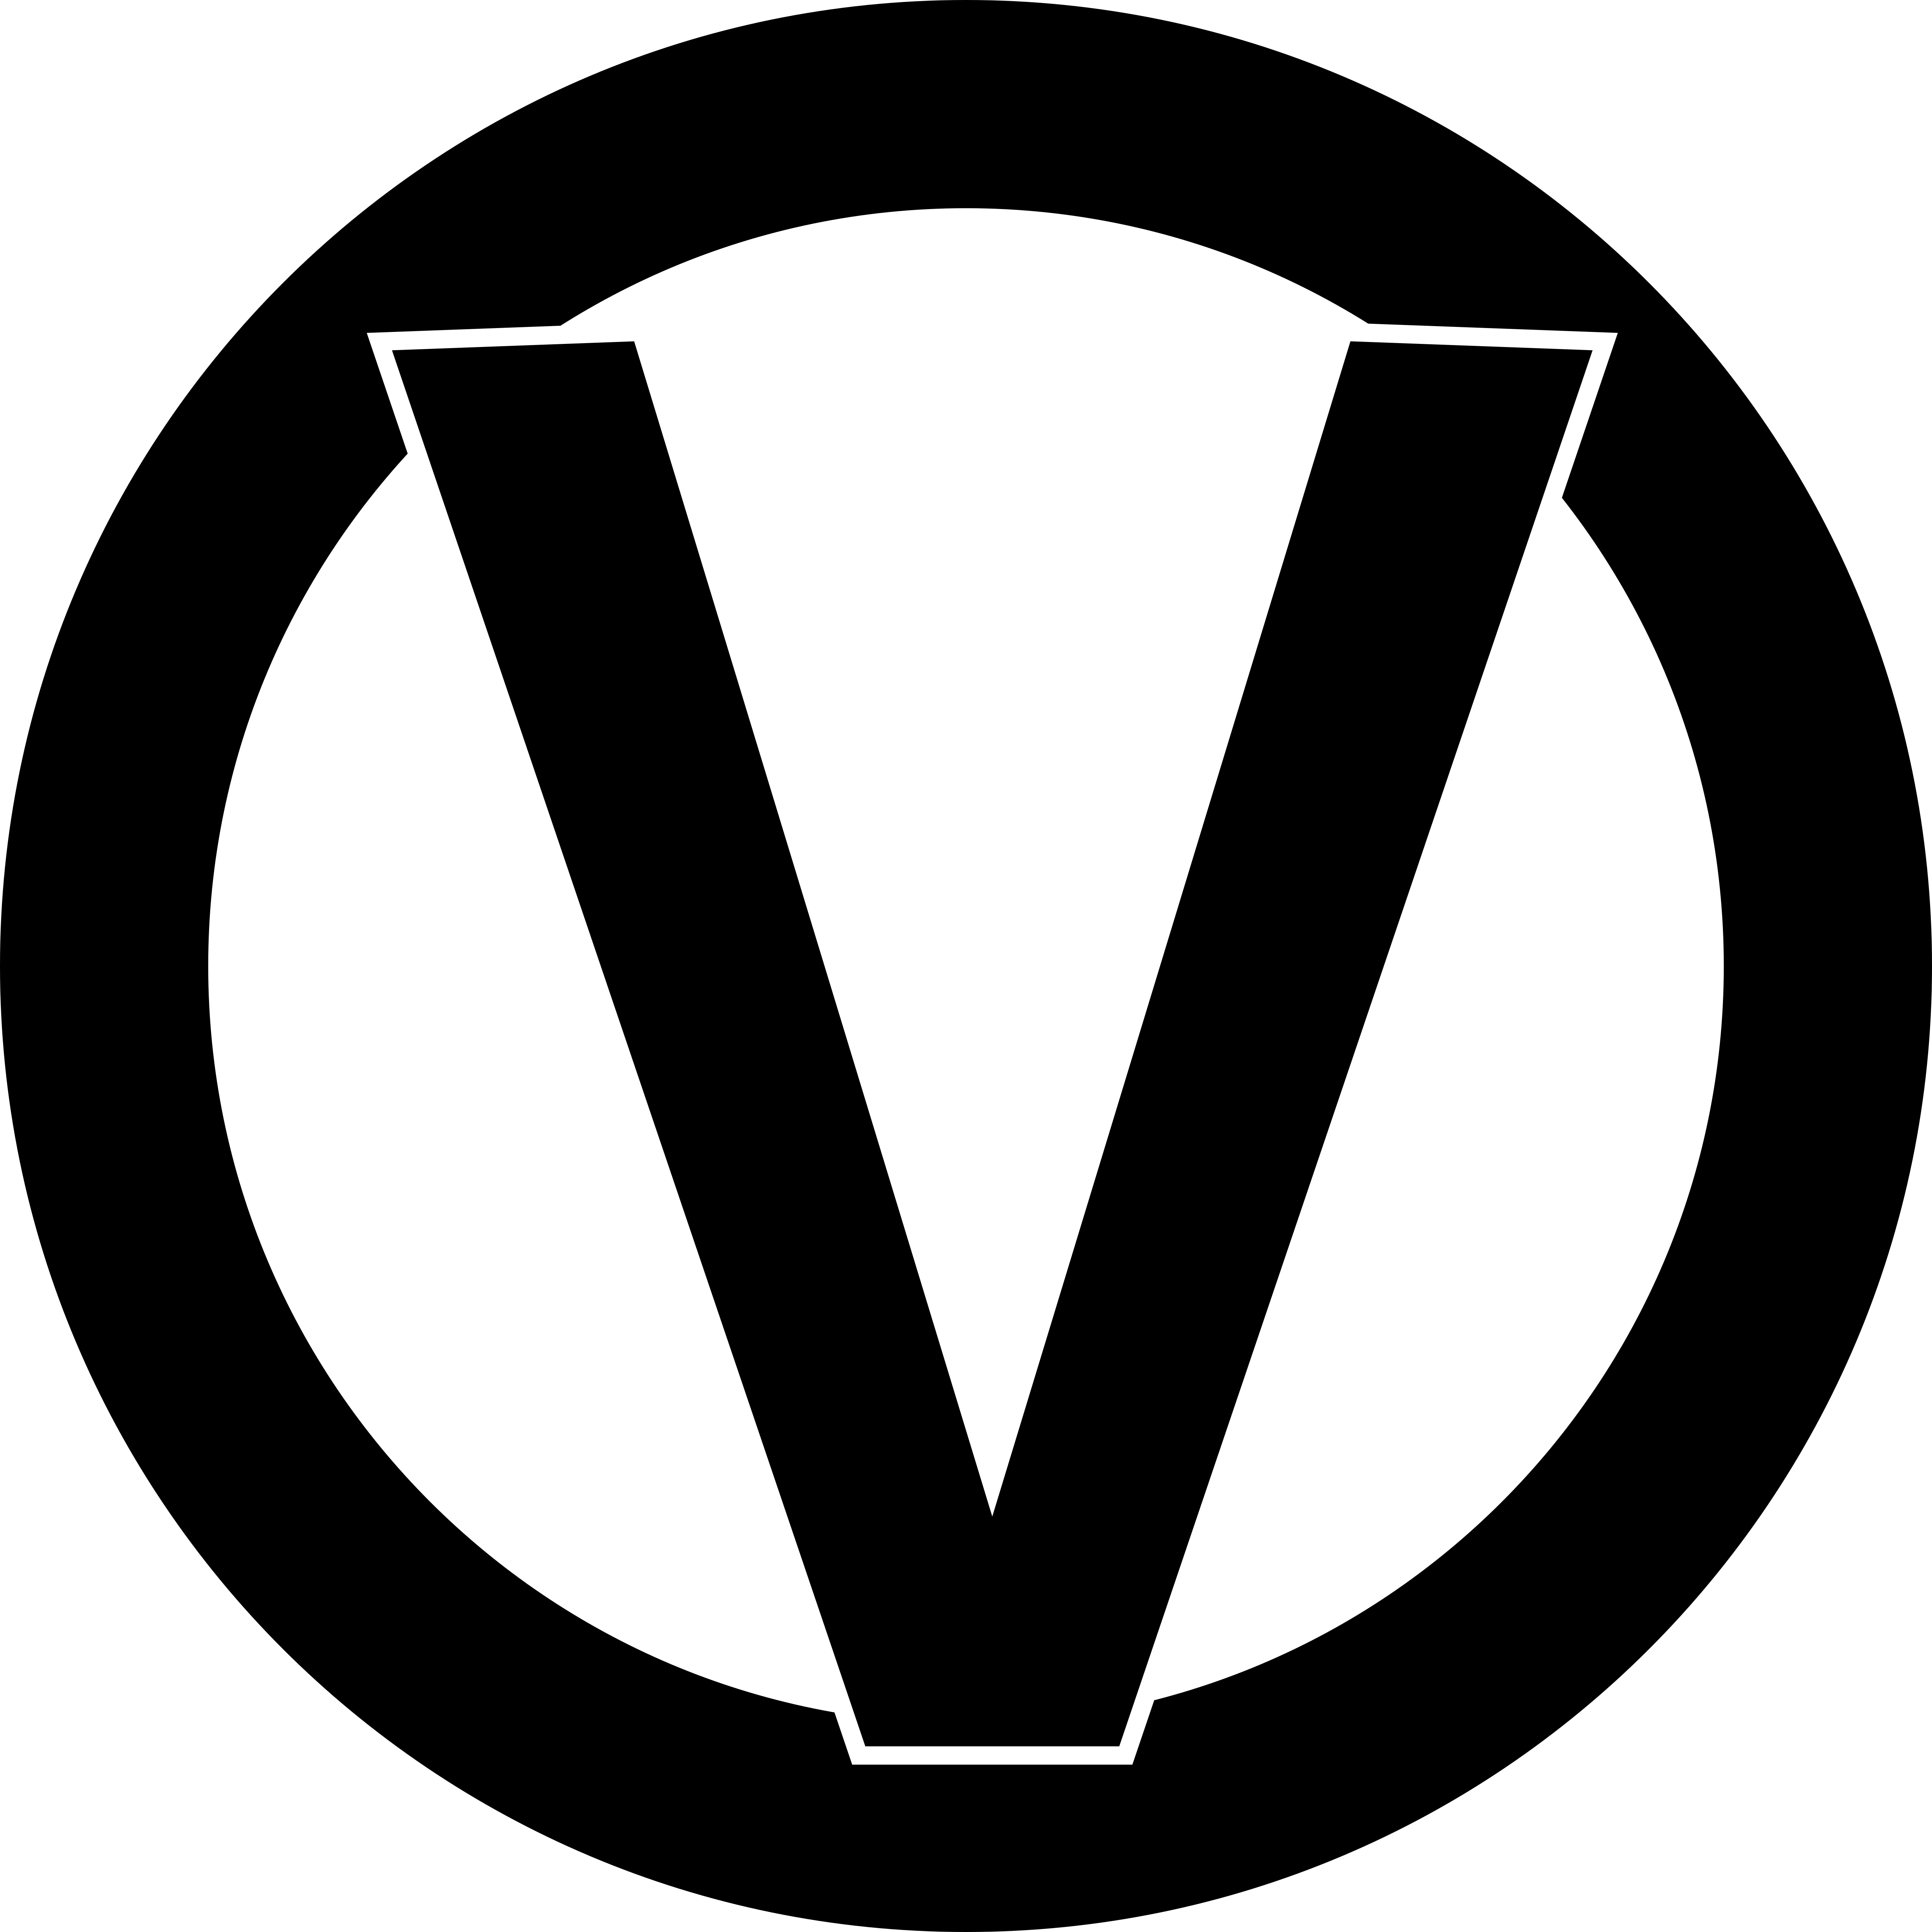 Vortex Logo - Vortex – Logos Download